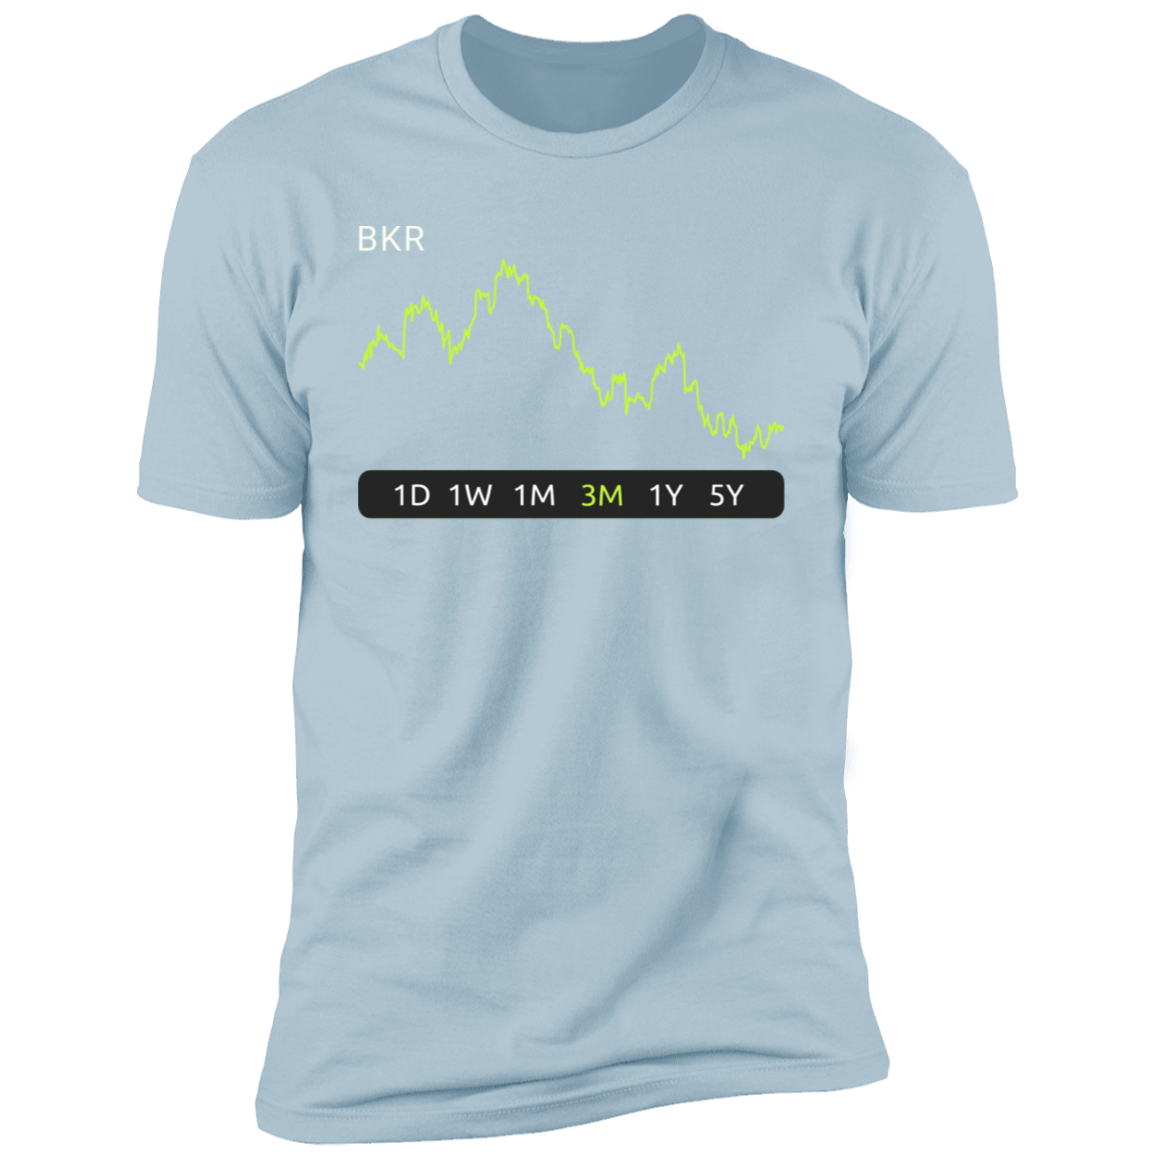 BKR Stock 3m Premium T-Shirt